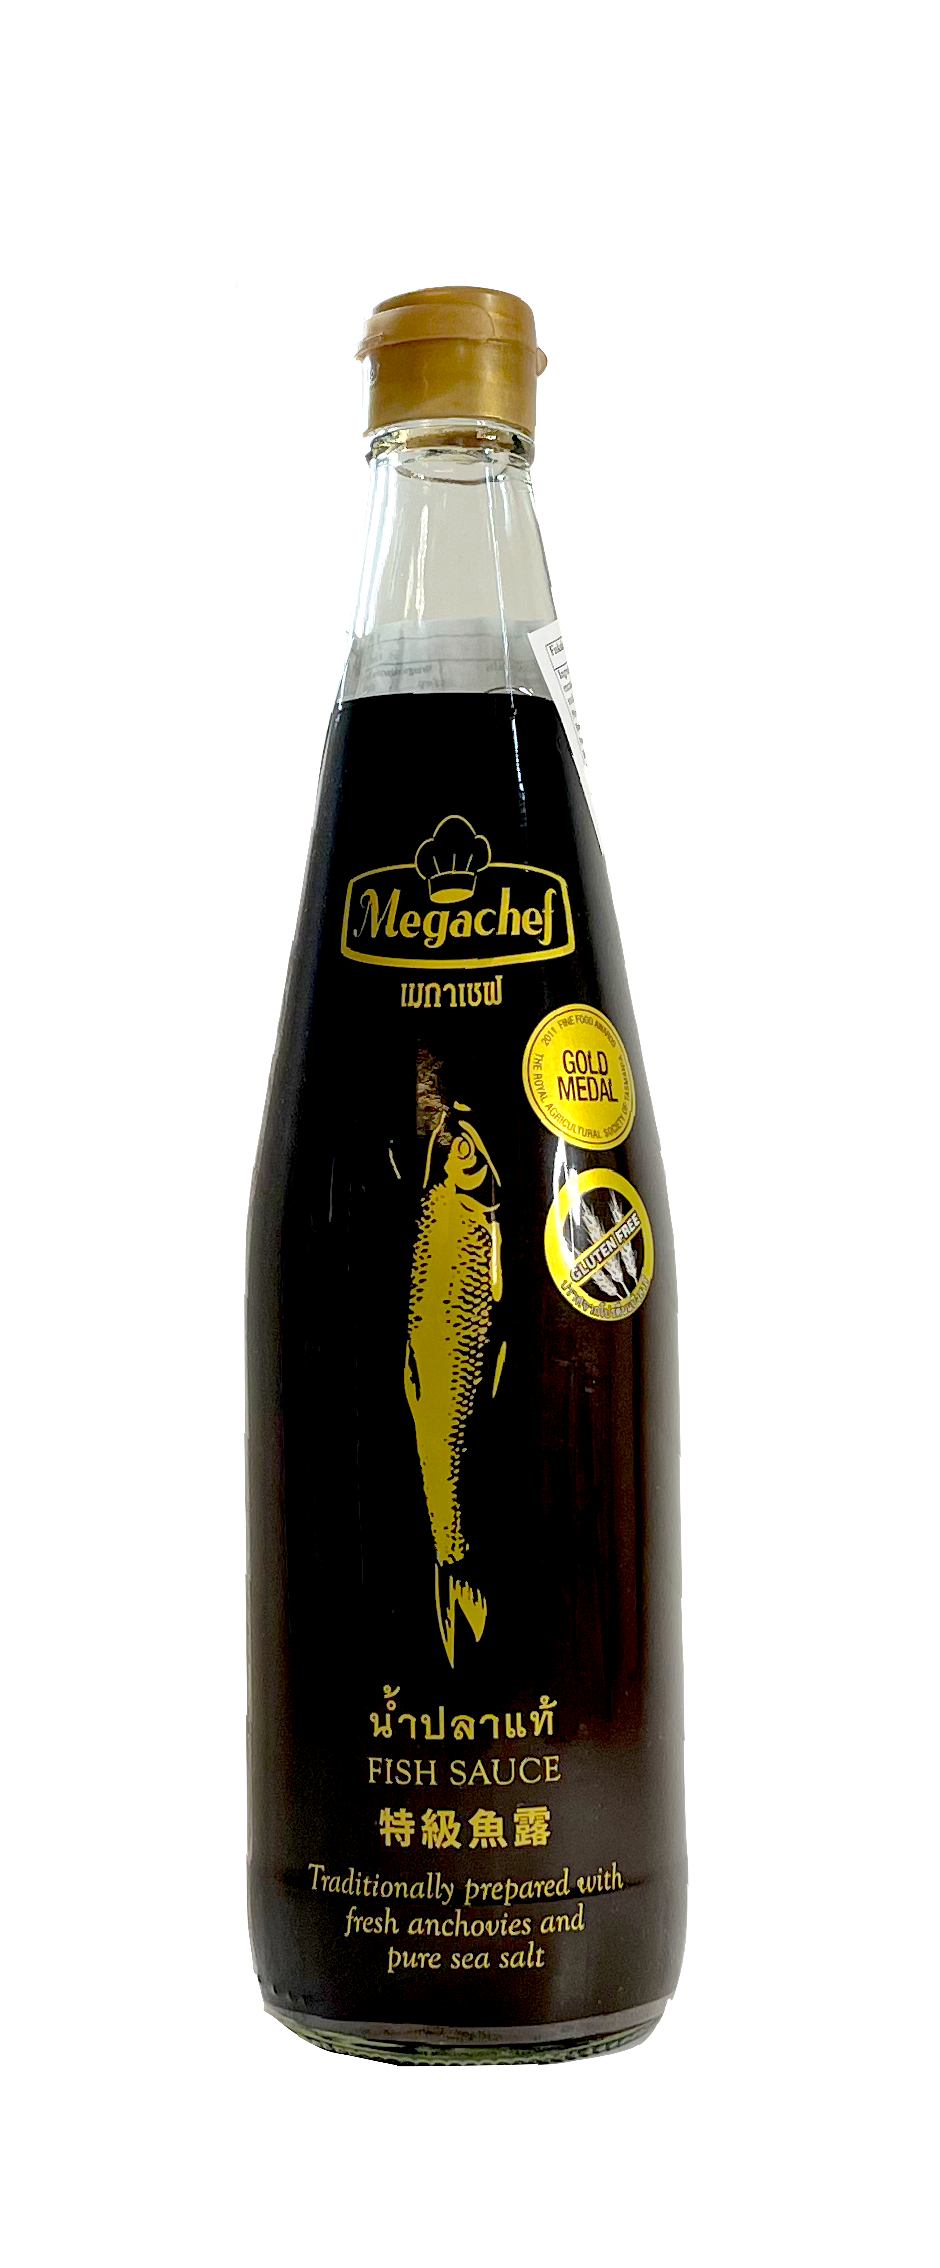 Fish Sauce Original 500ml Brown Bottle Megachef Thailand